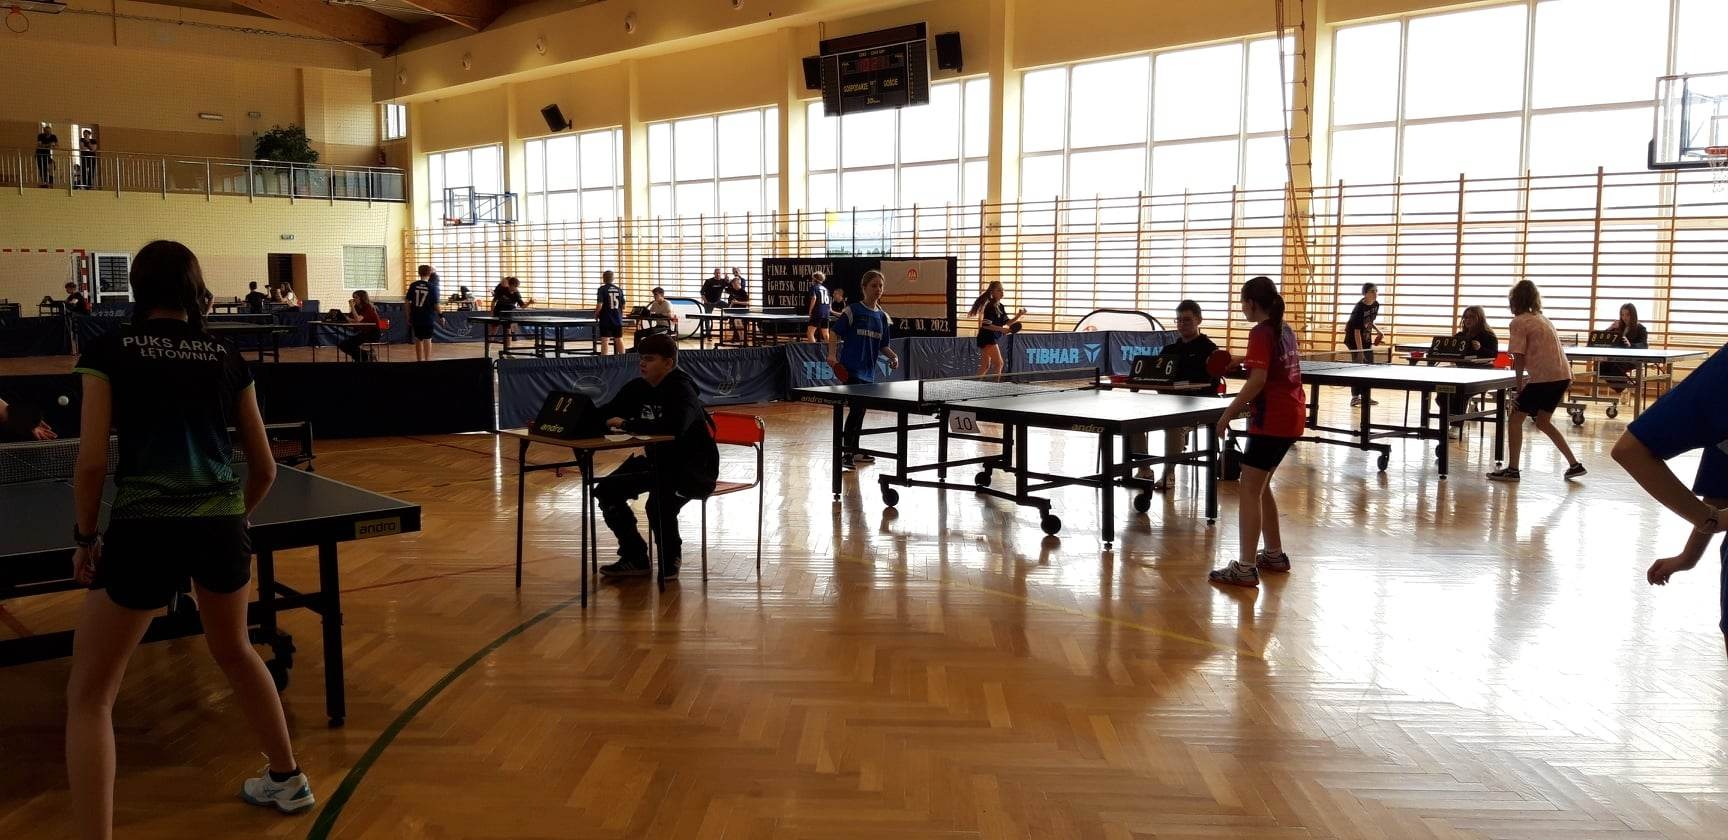 Finał Wojewódzki Igrzysk Dzieci w tenisie stołowym uczennice z ZSP Młodów grają mecz